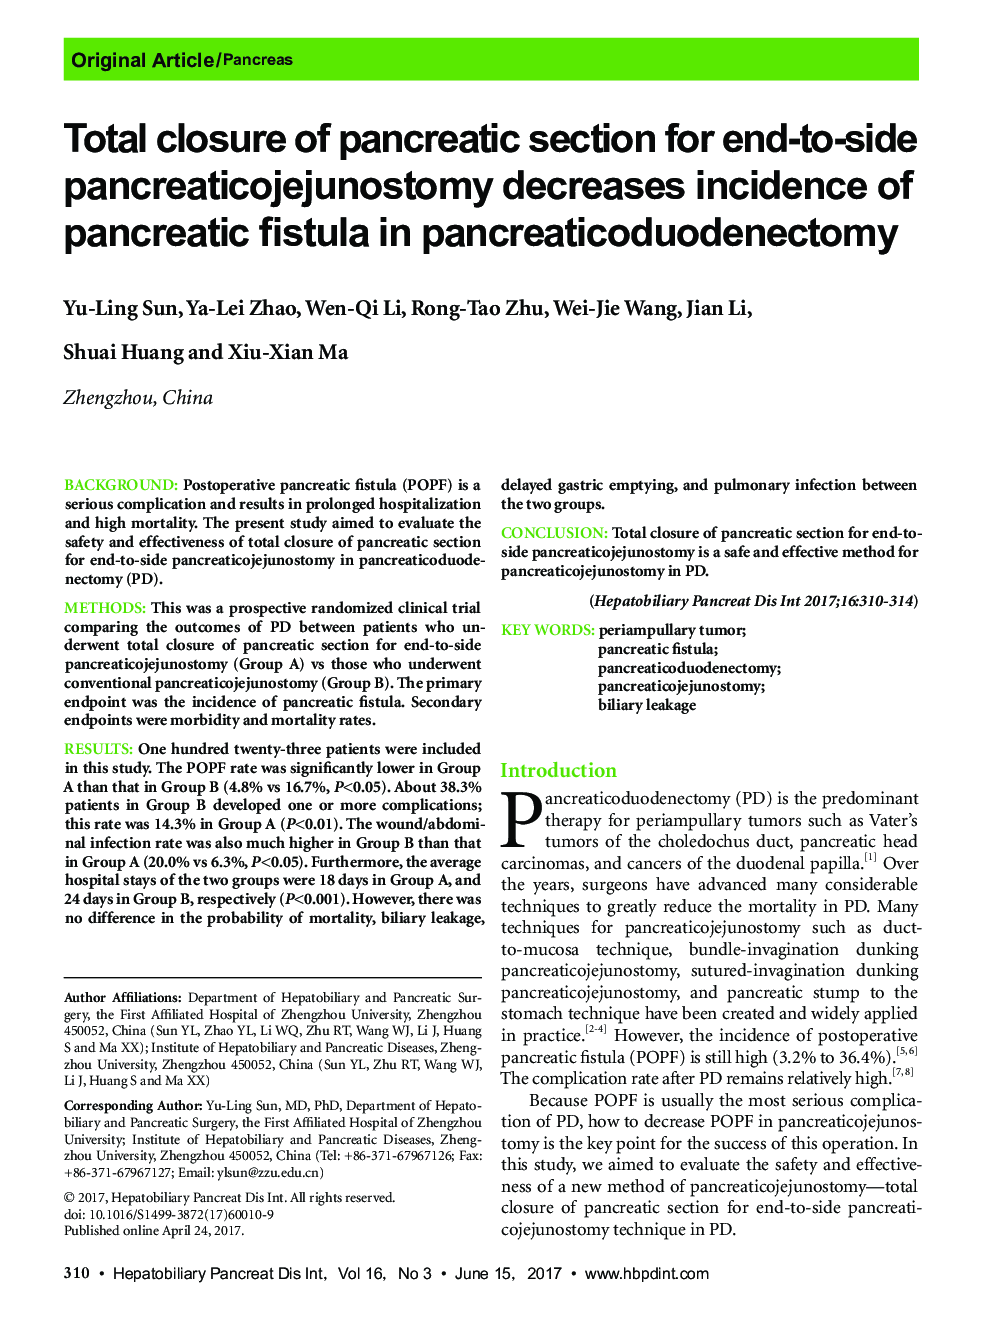 بسته شدن کامل قسمت پانکراس برای پانکراستیک یونوستومی انتهای جانبی باعث کاهش شیوع فیستول پانکراس در پانکراس سدویژنکتومی می شود 